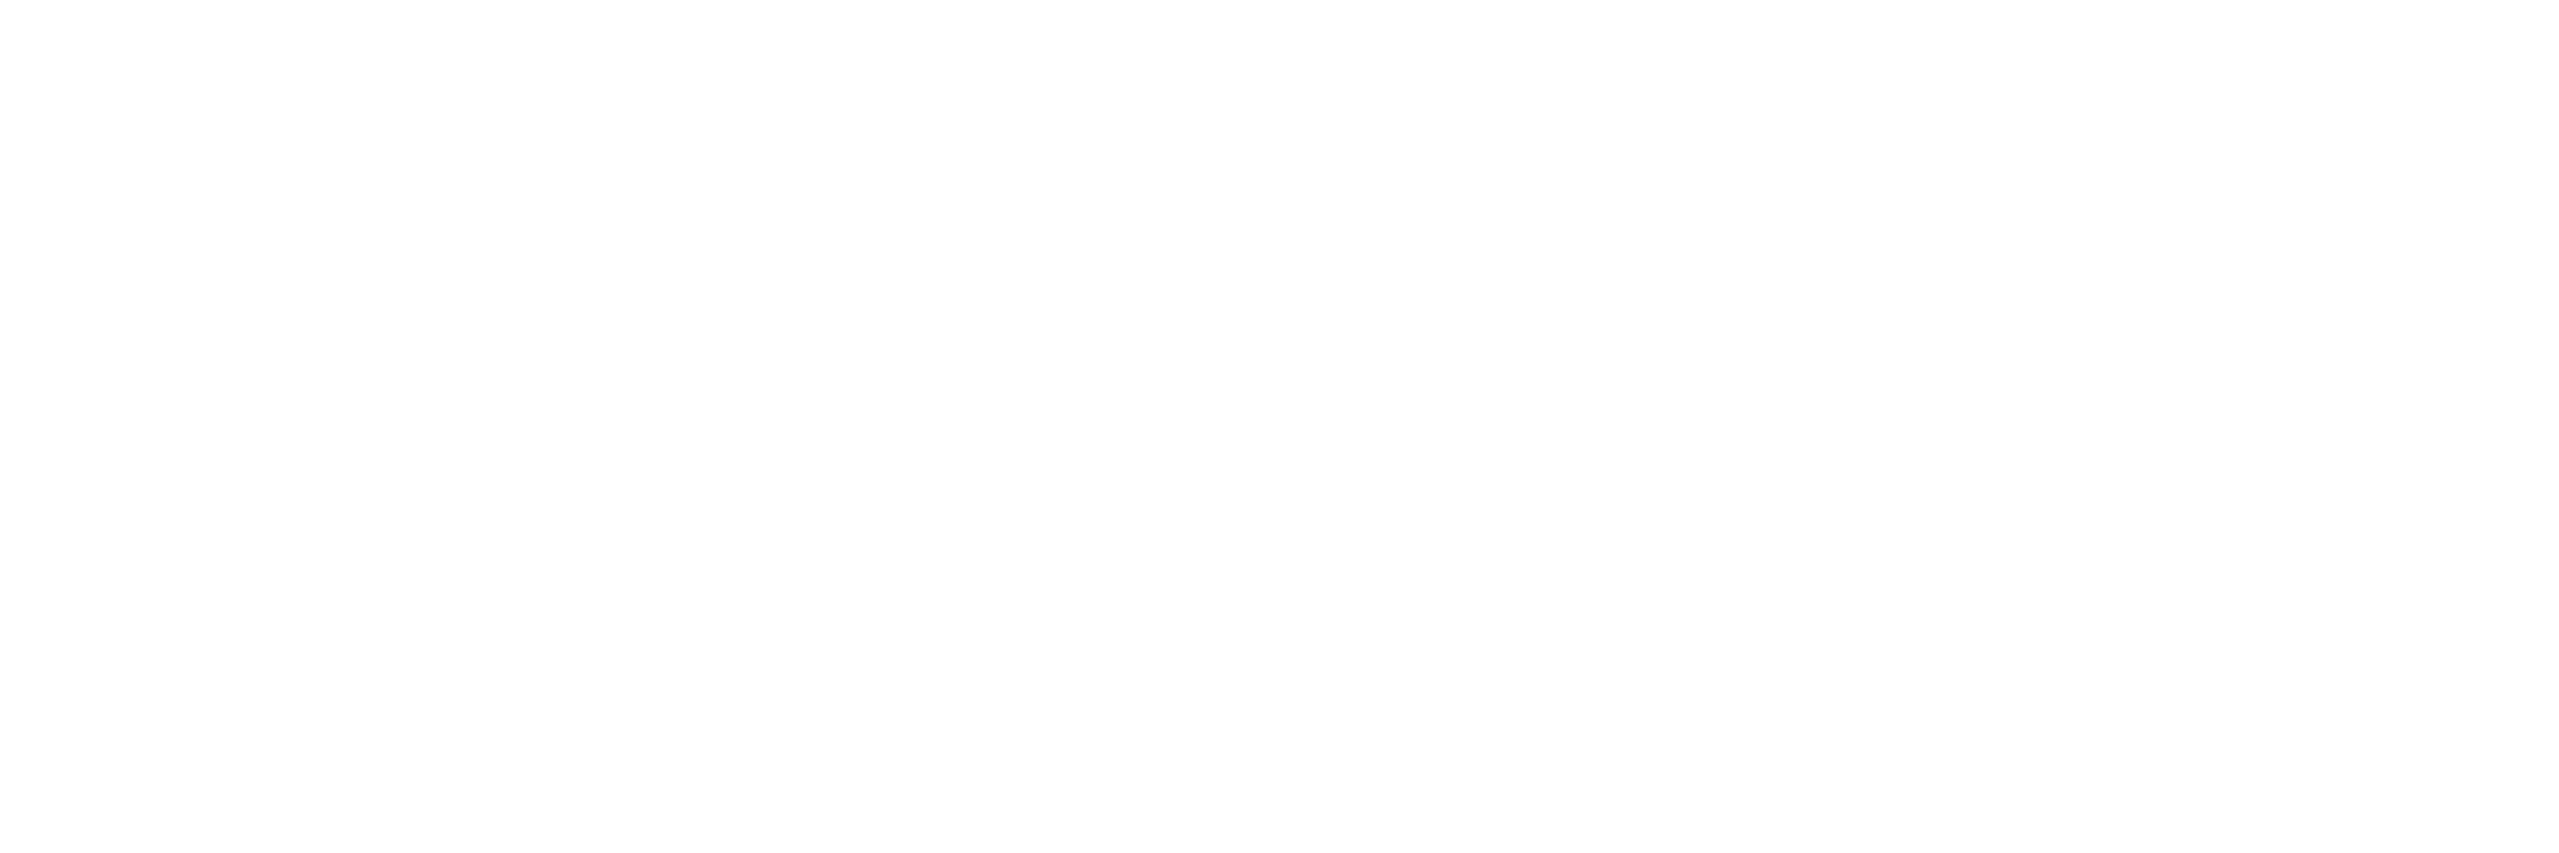 Juwelier Lessmann